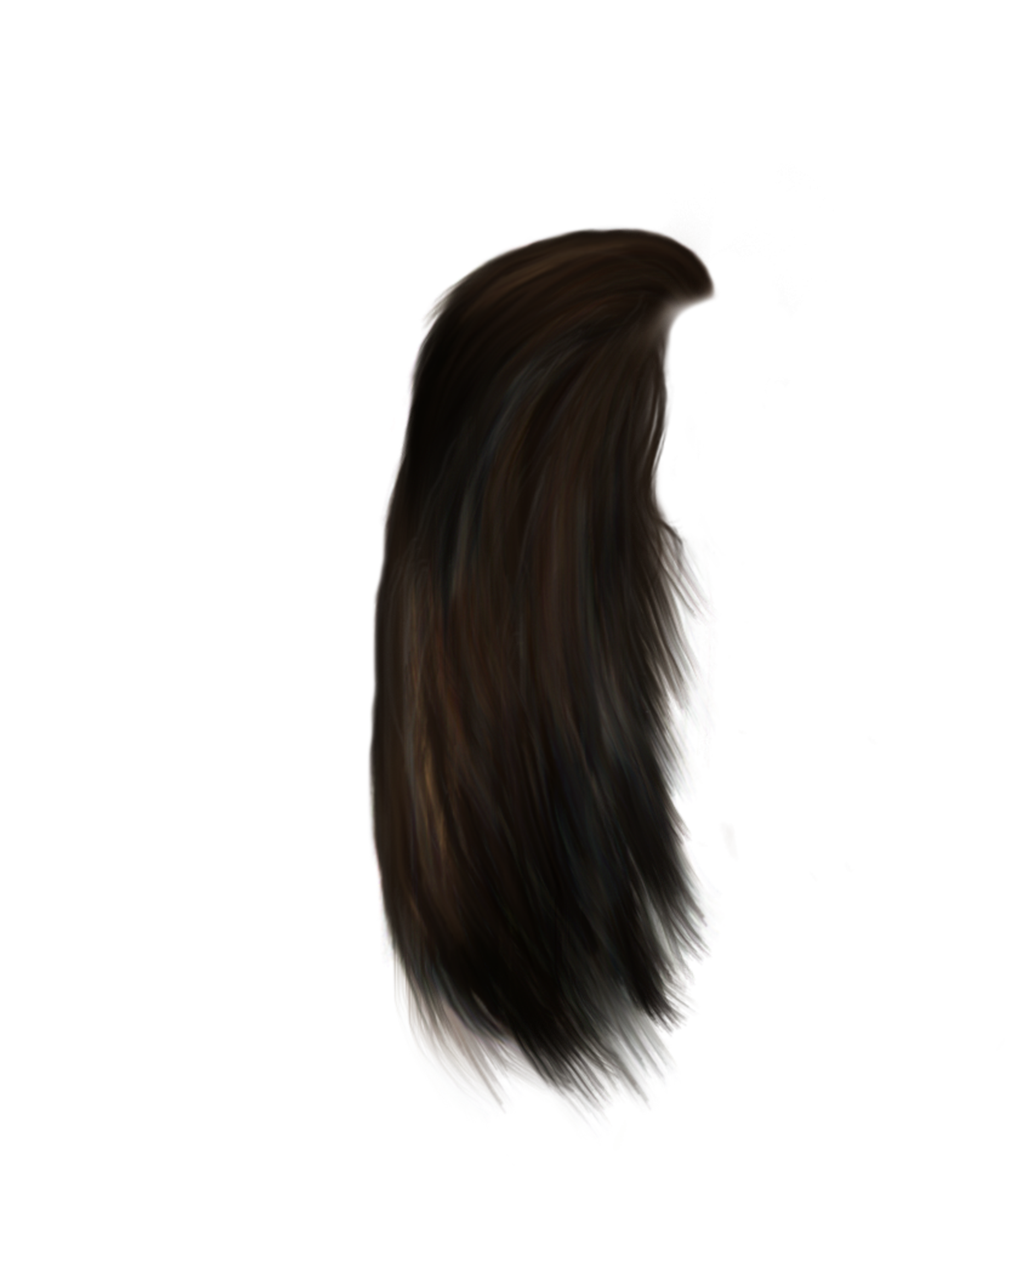 Beard PNG Transparent Image